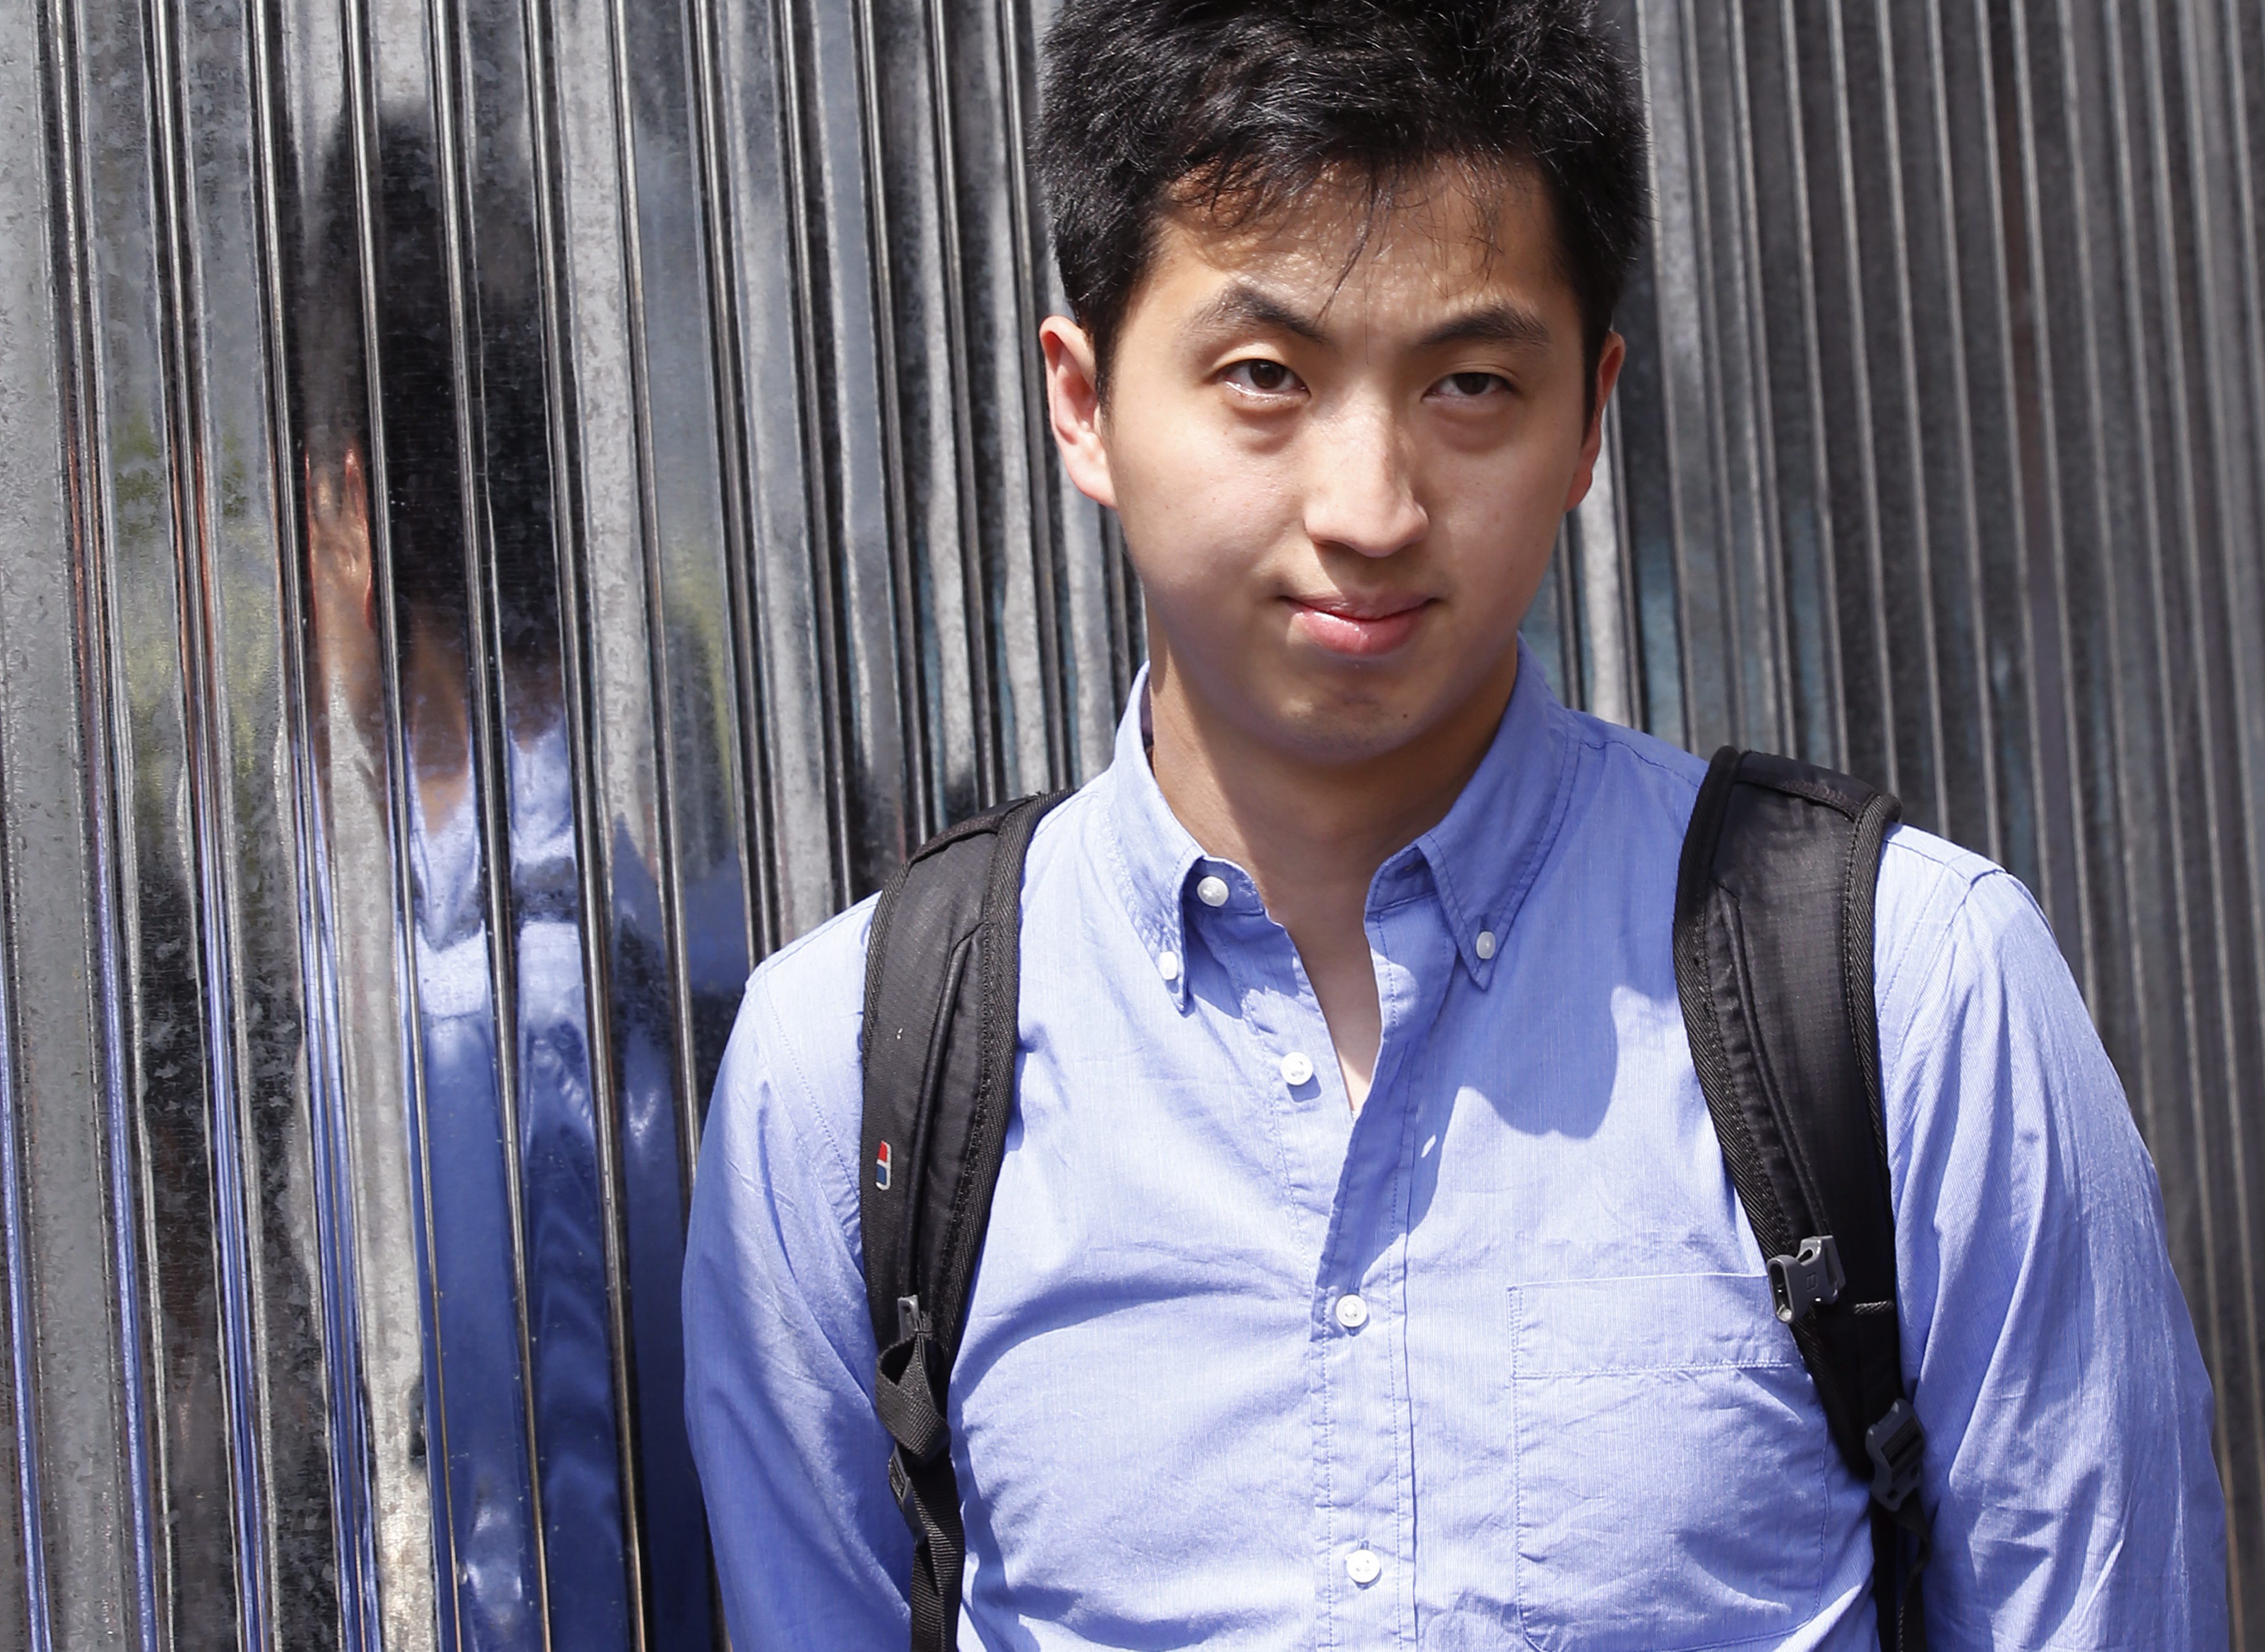 Anthony Kwan Hok-chun arrives at court in Bangkok on Monday. Photo: EPA